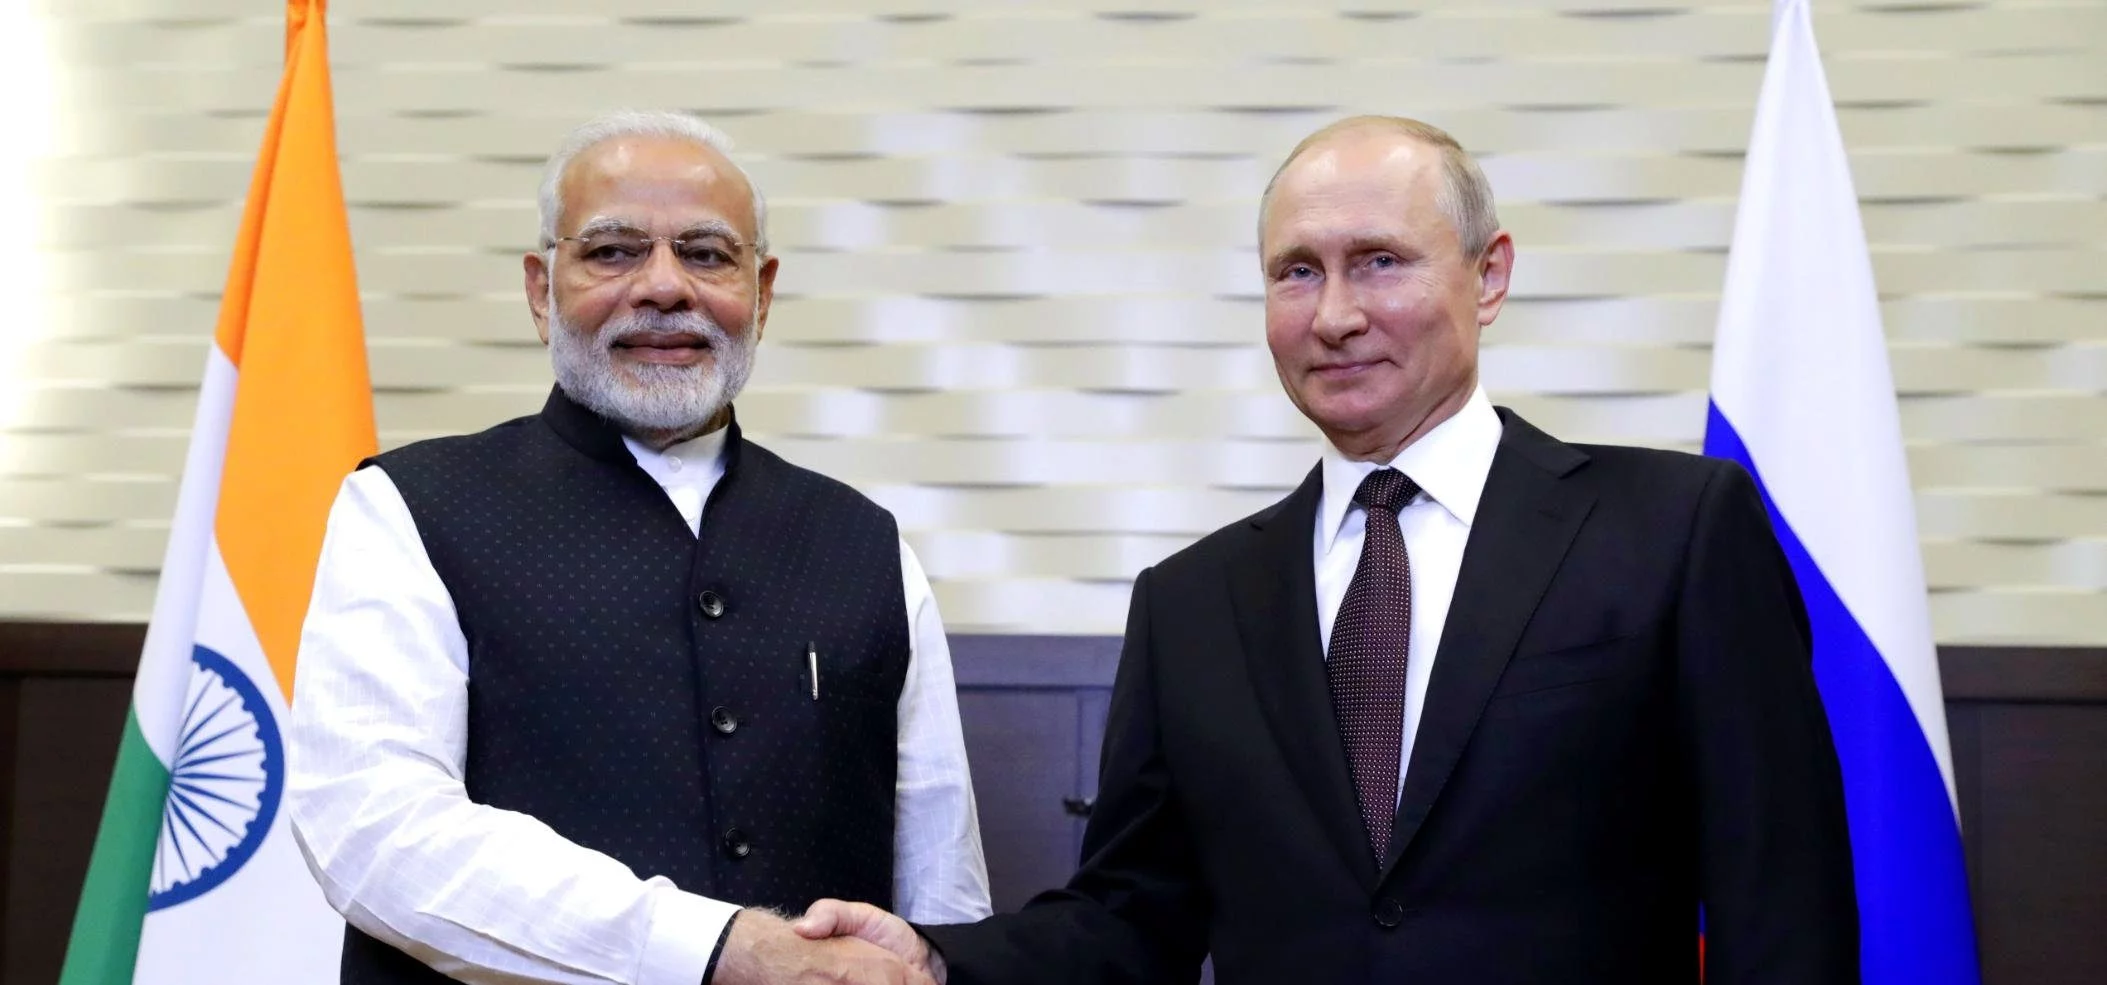 Per aggirare le sanzioni occidentali la Russia vuole scambiare rubli con rupie indiane